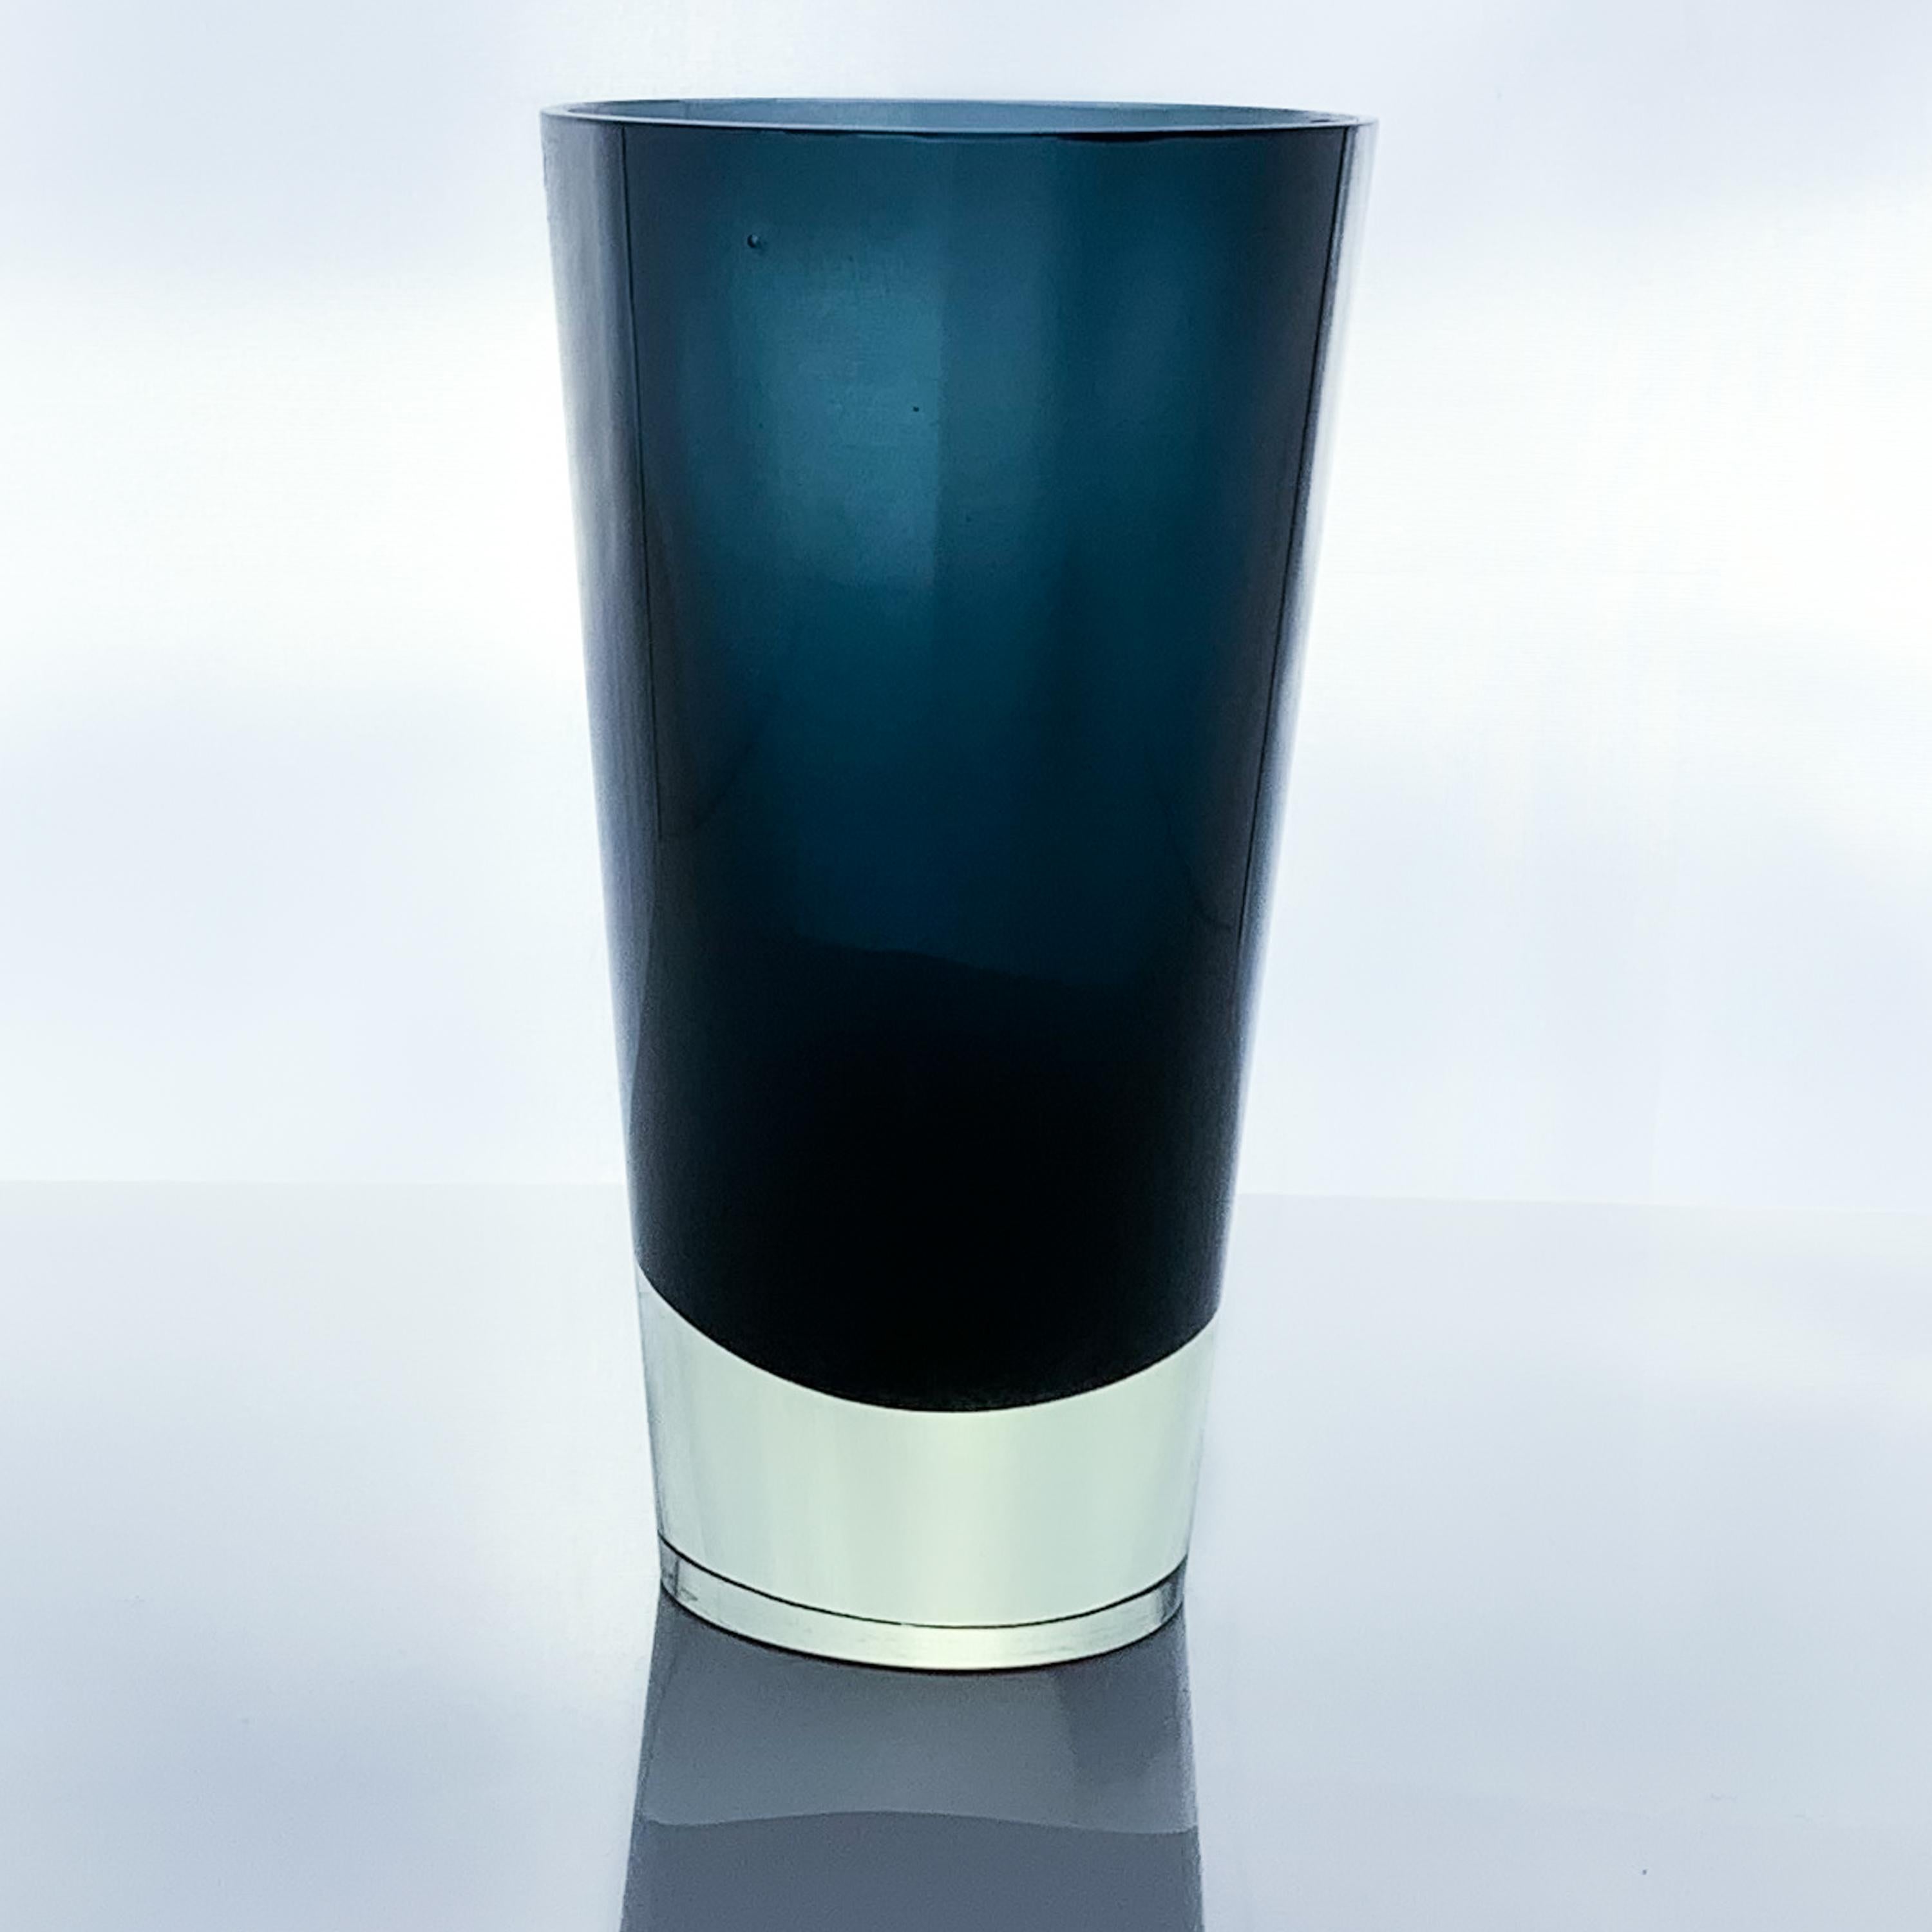 Finnish Kaj Franck, Cased Blue Glass Art-Object, Model KF 234, Nuutajärvi-Notsjö, 1961